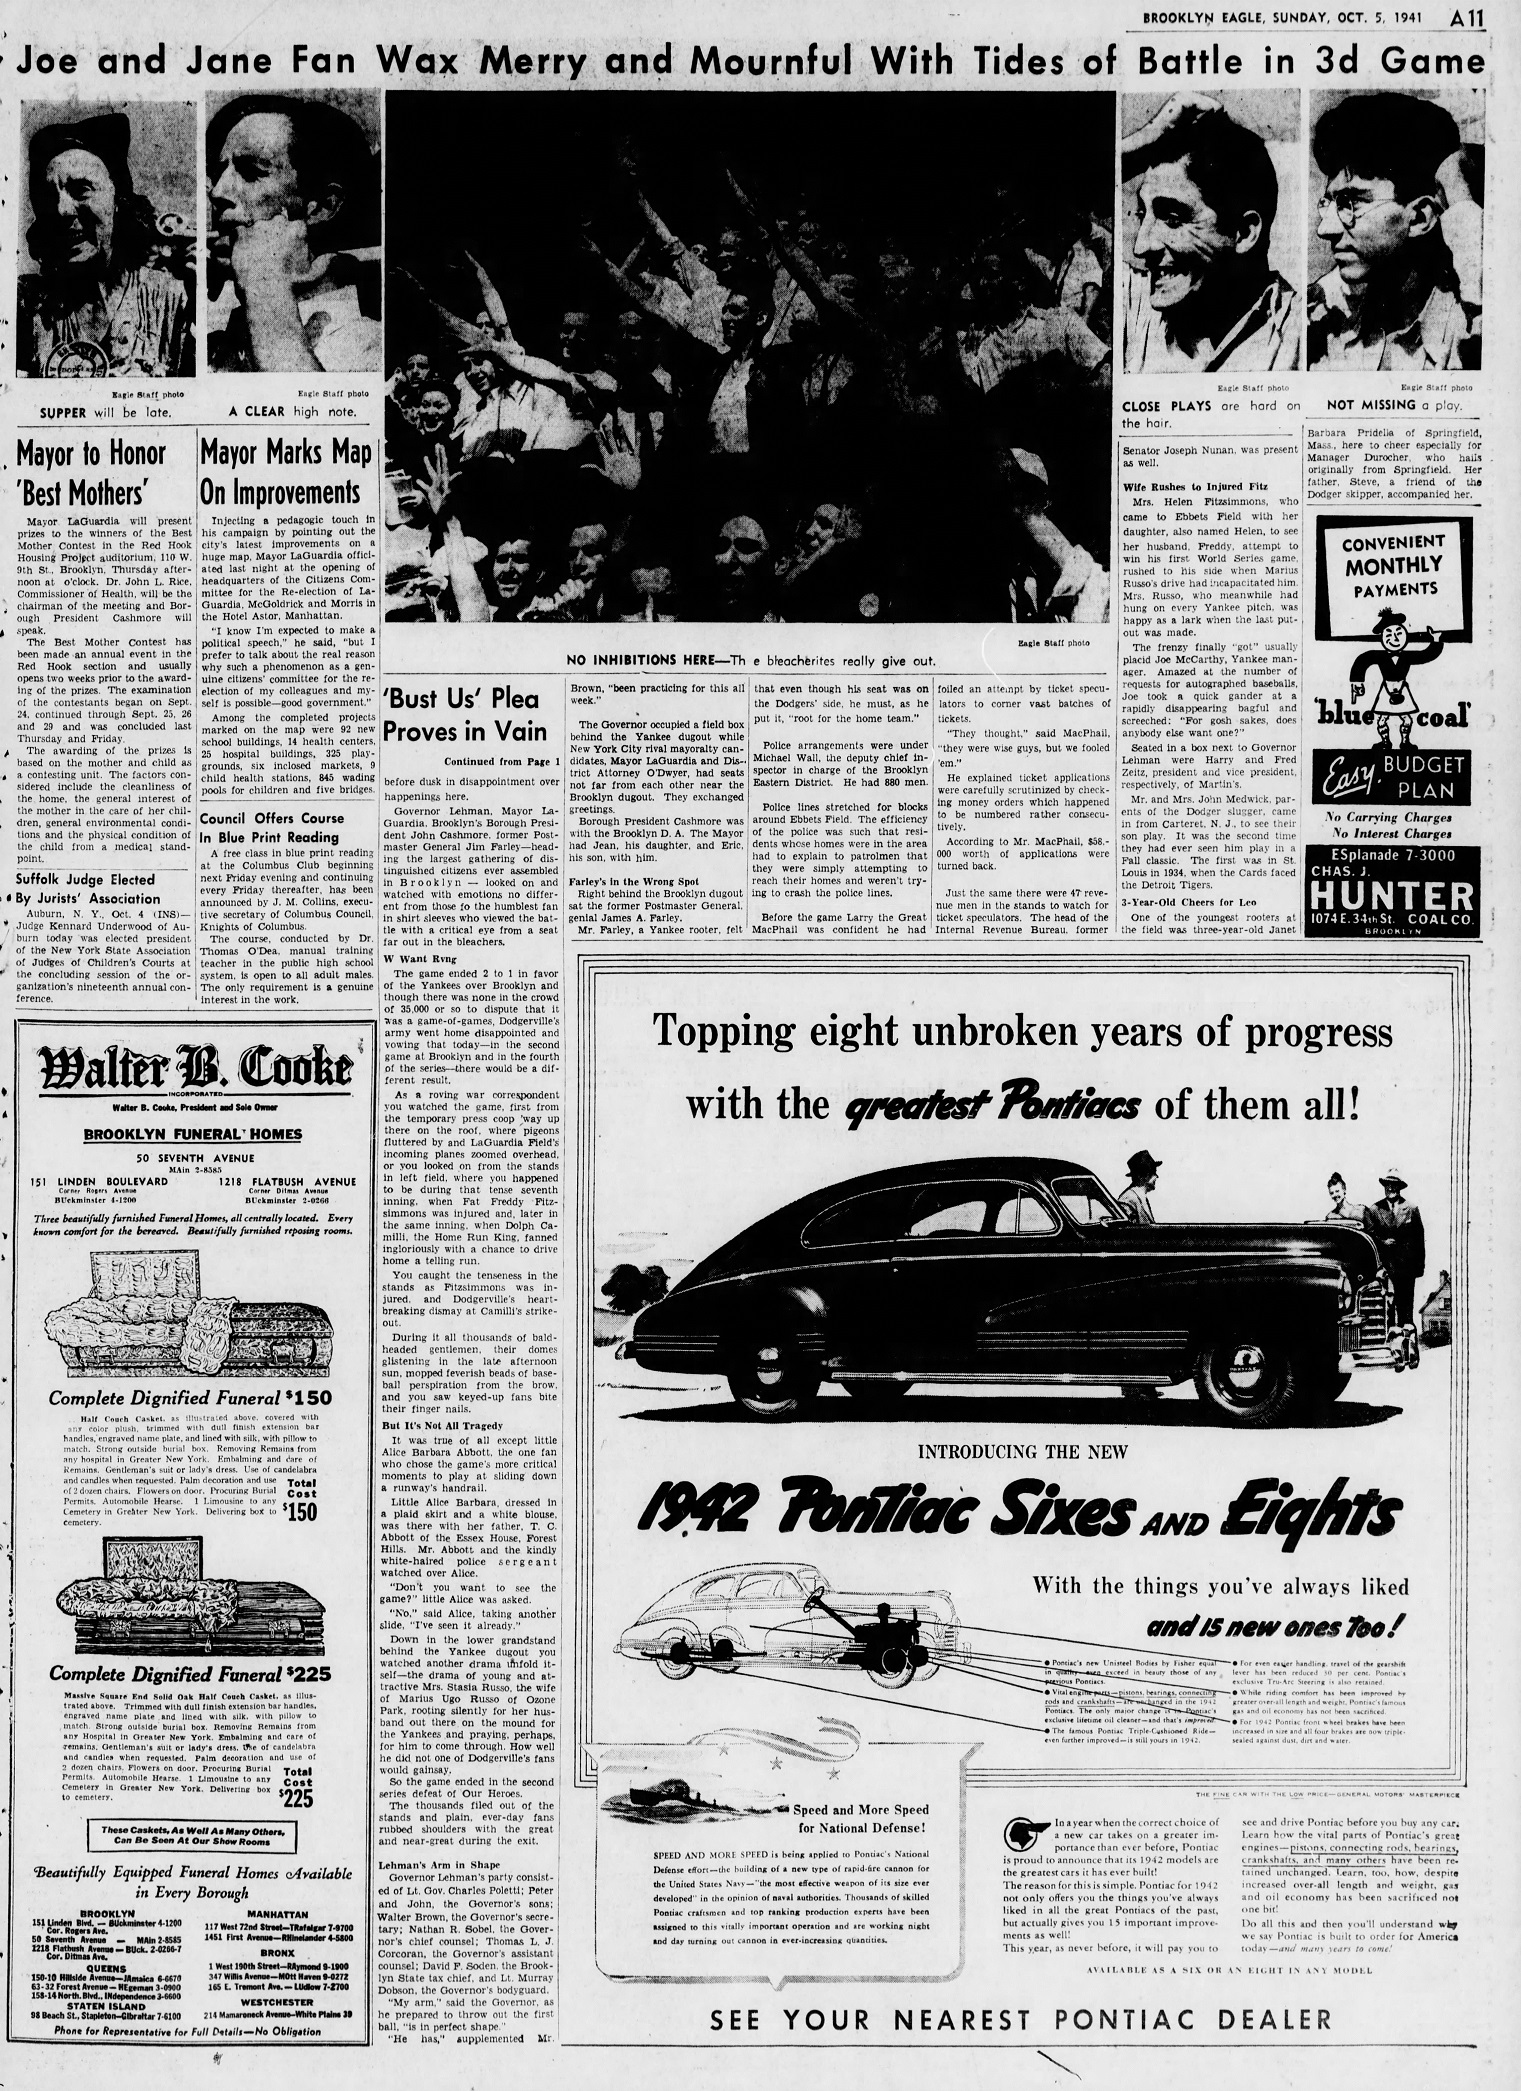 The_Brooklyn_Daily_Eagle_Sun__Oct_5__1941_(1).jpg